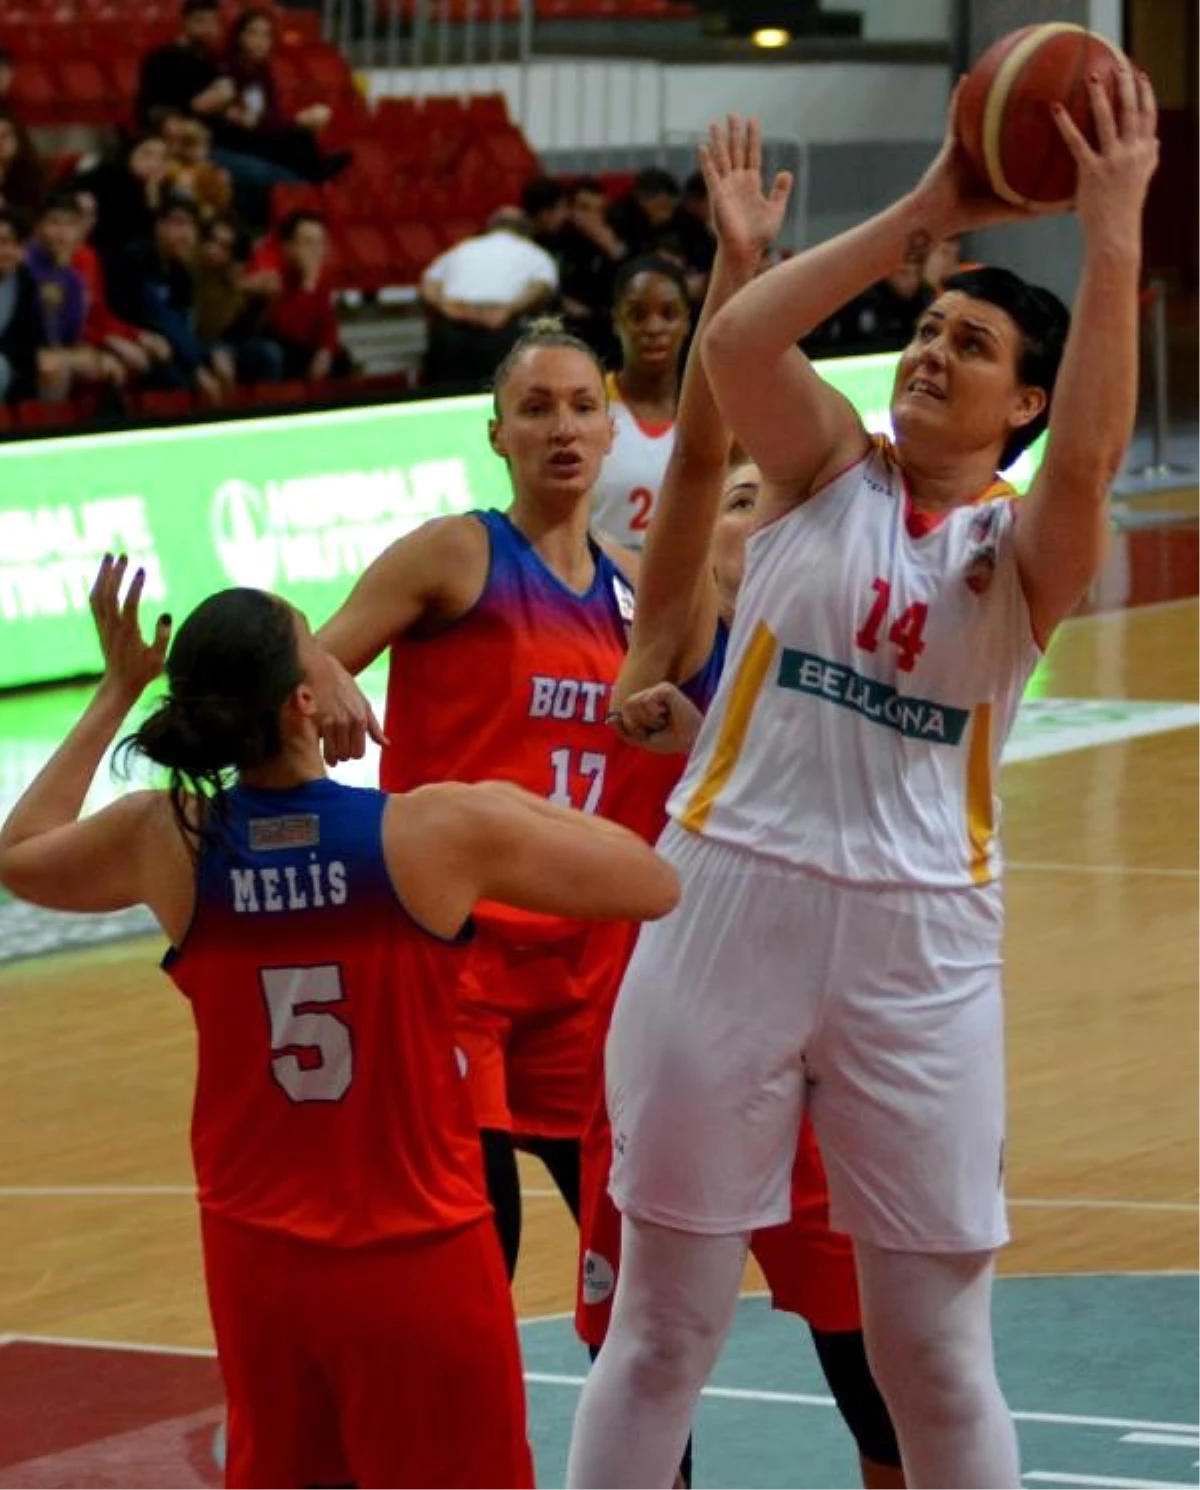 Bellona Kayseri Basketbol - BOTAŞ: 61-58